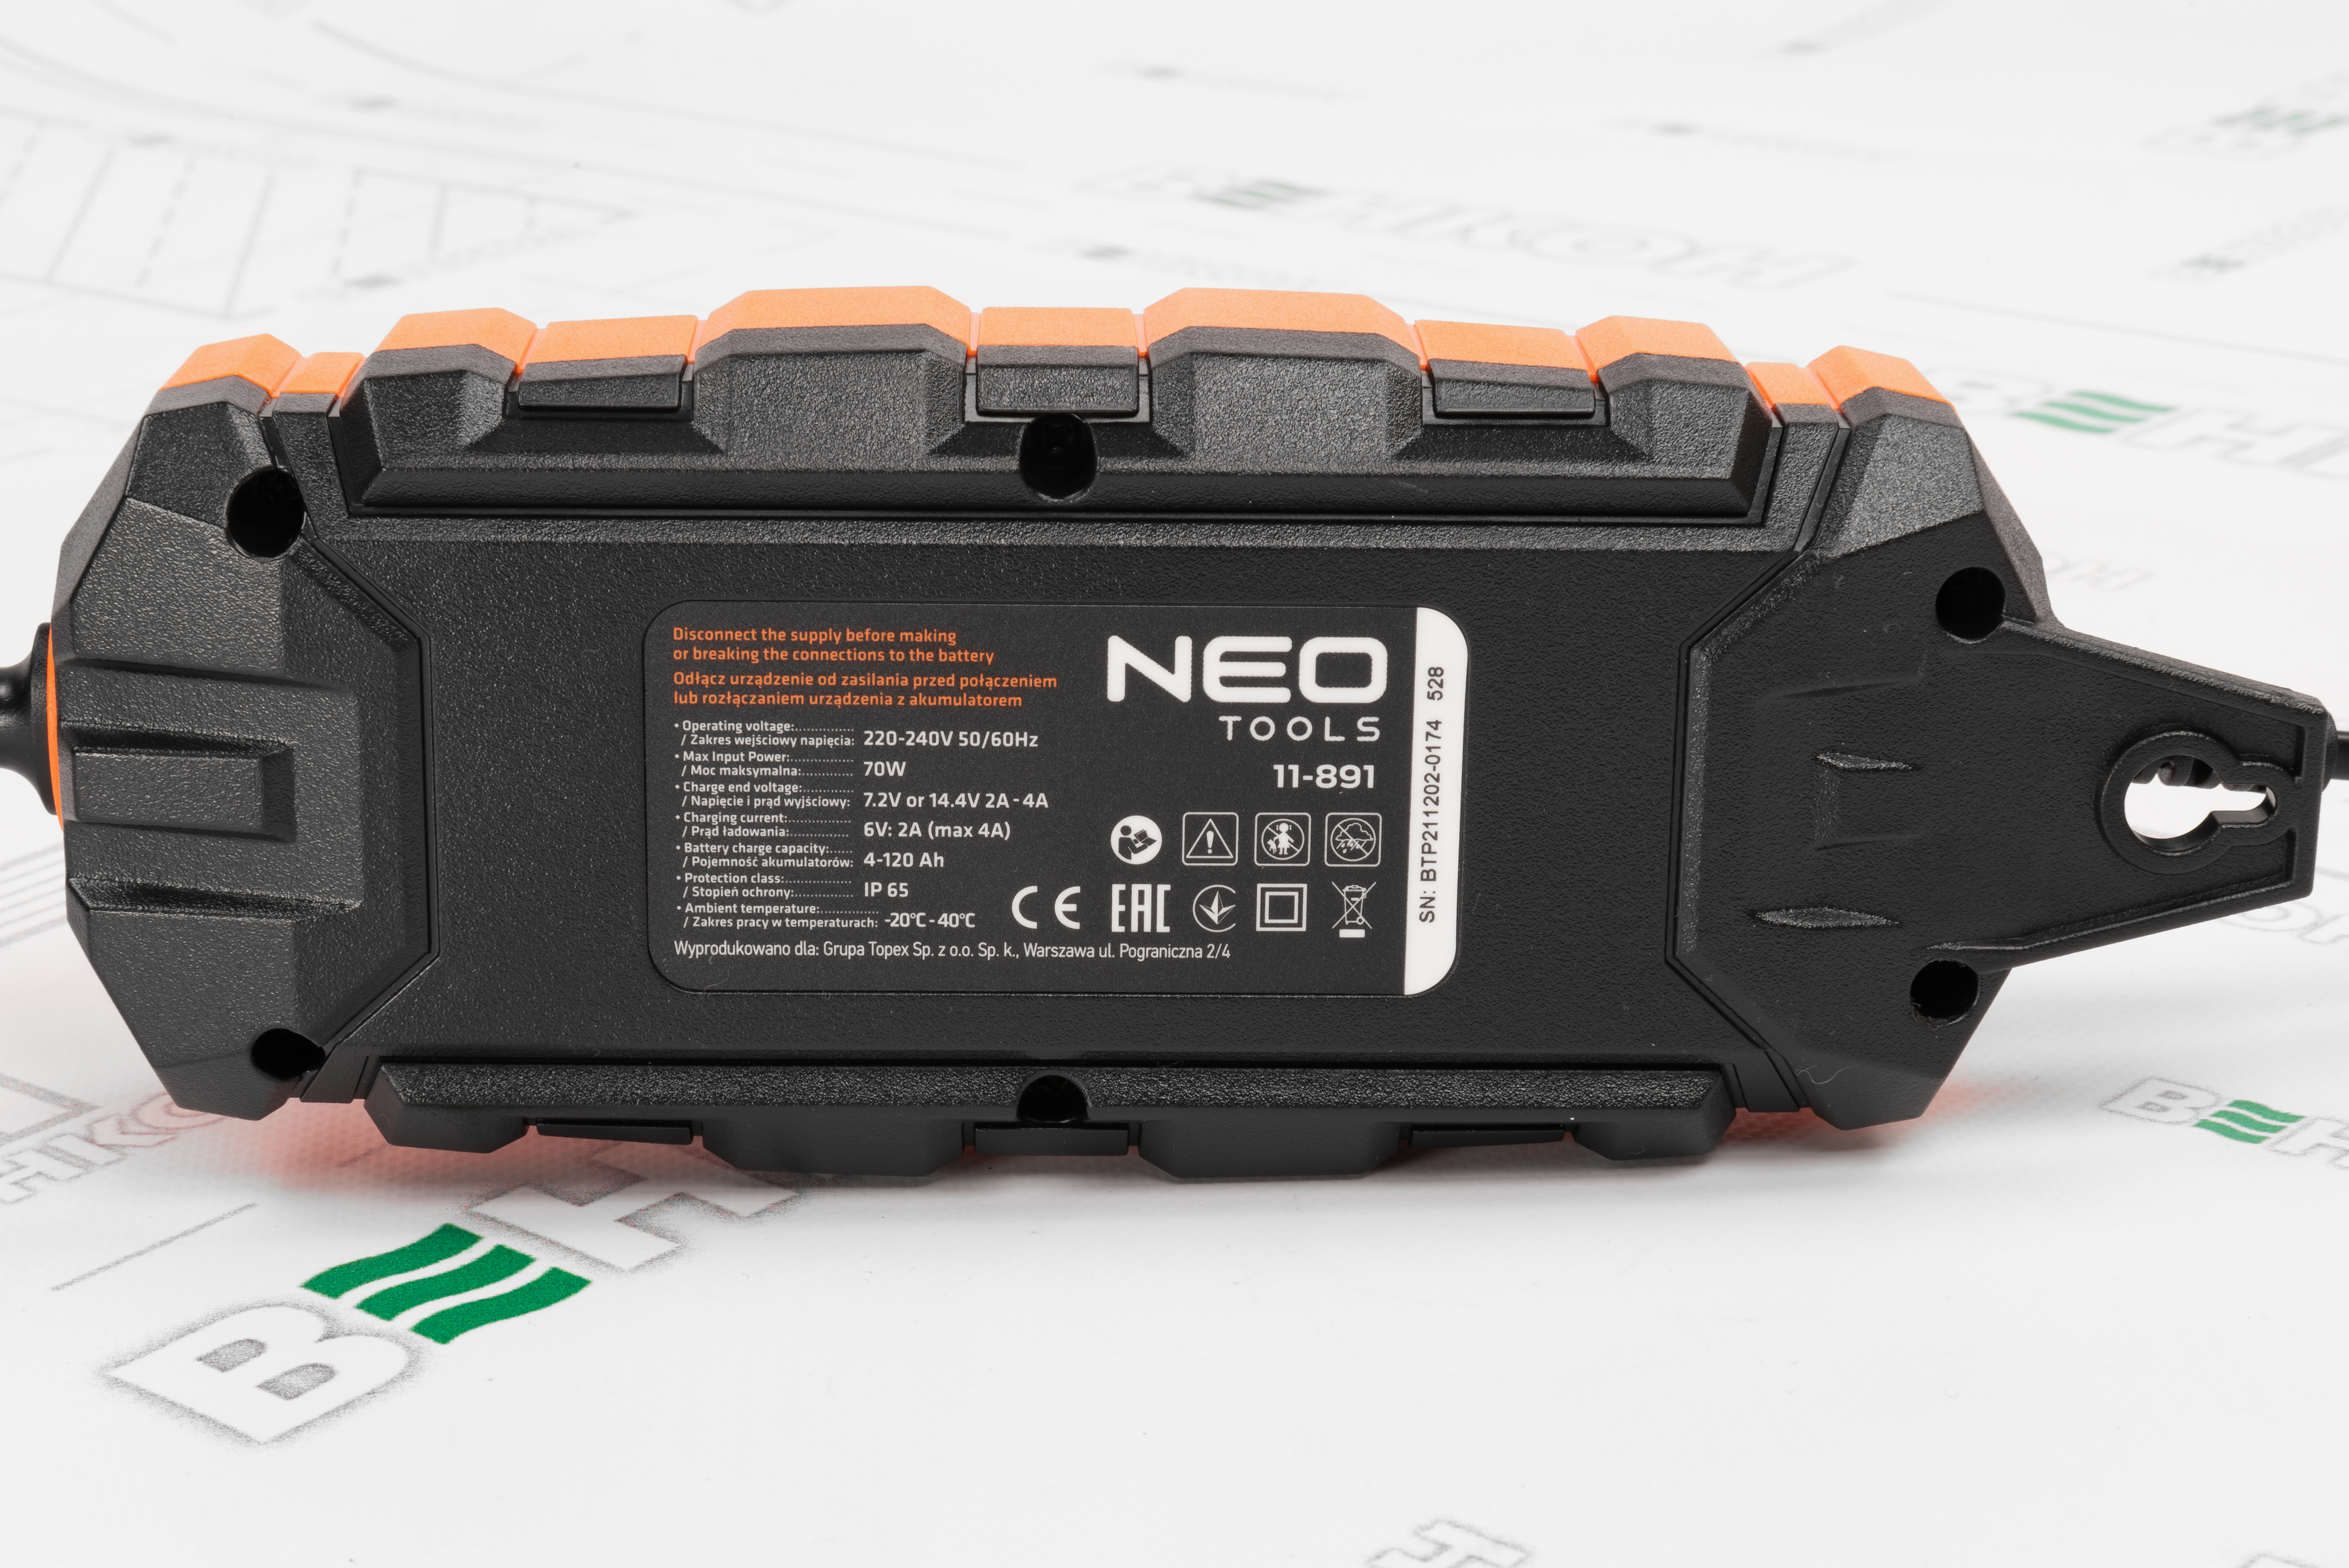 Интеллектуальное зарядное устройство Neo Tools 11-891 отзывы - изображения 5